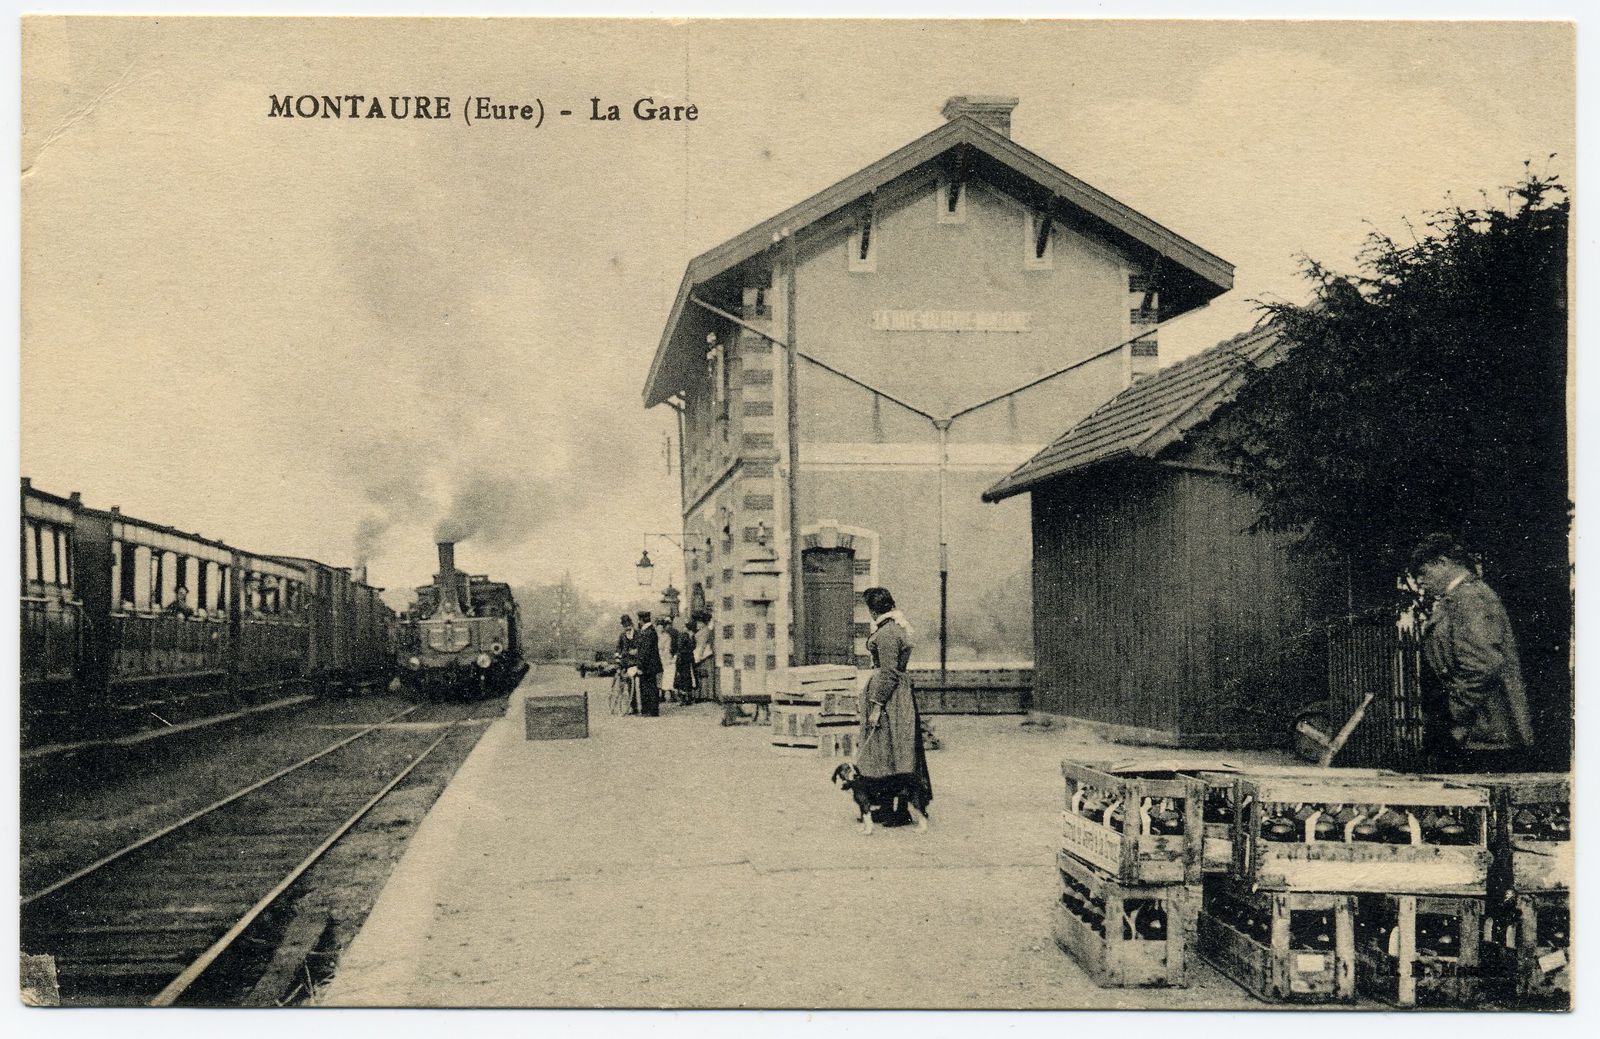 La gare de Montaure était en fait située à La Haye-Malherbe...